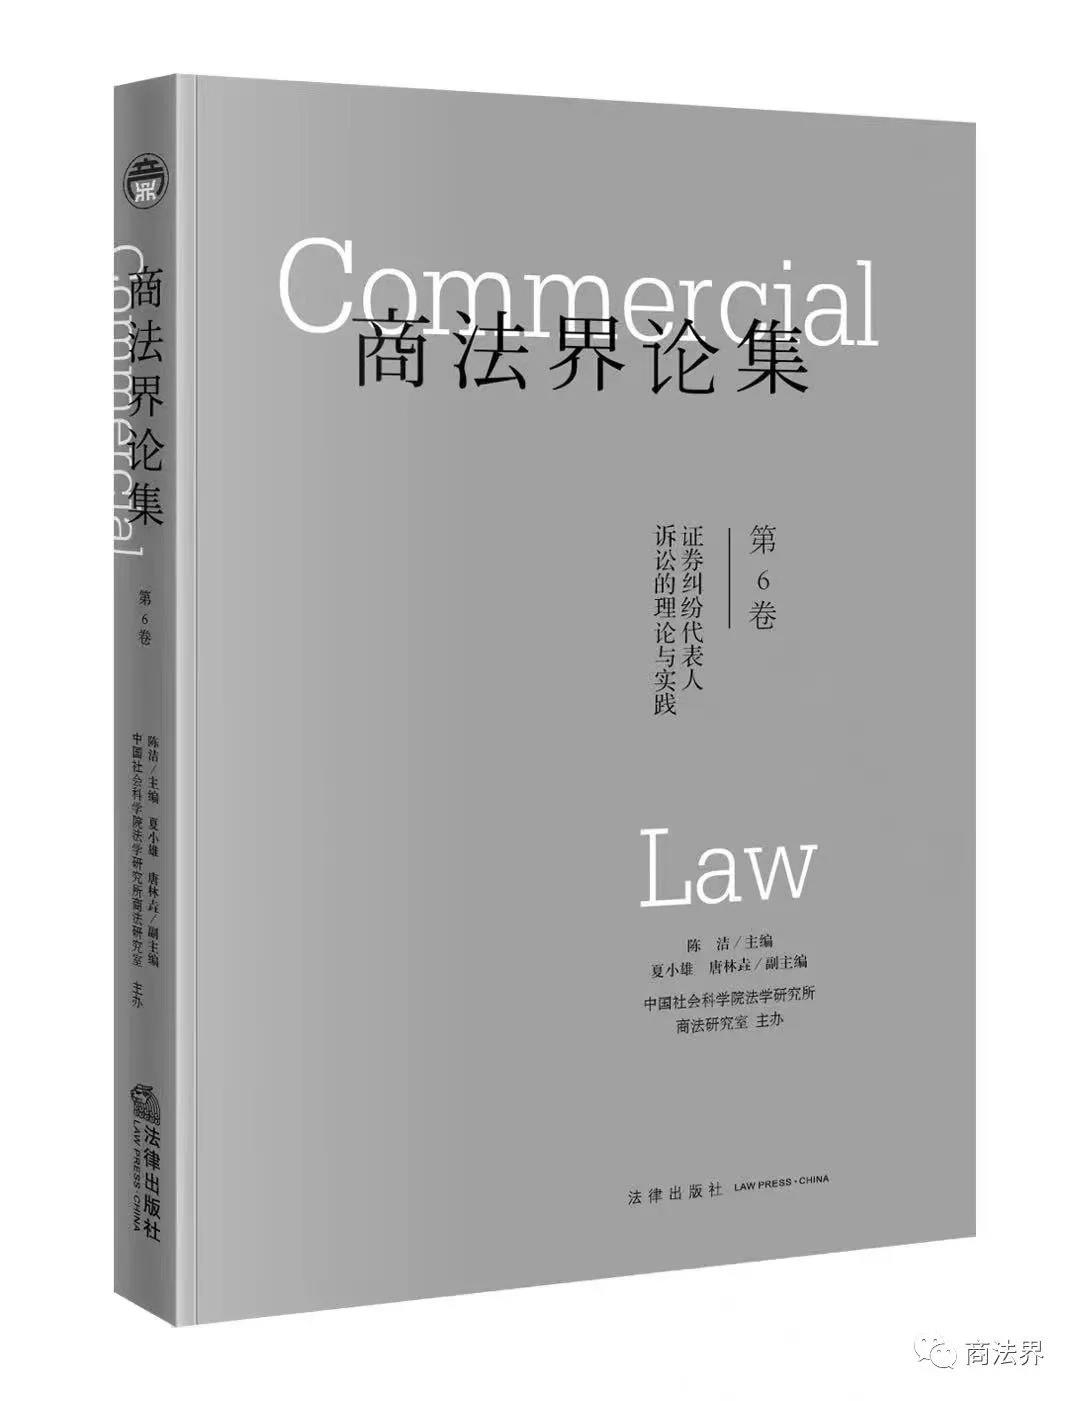 商法界论集（第6卷）：证券纠纷代表人诉讼的理论与实践》正式出版了 